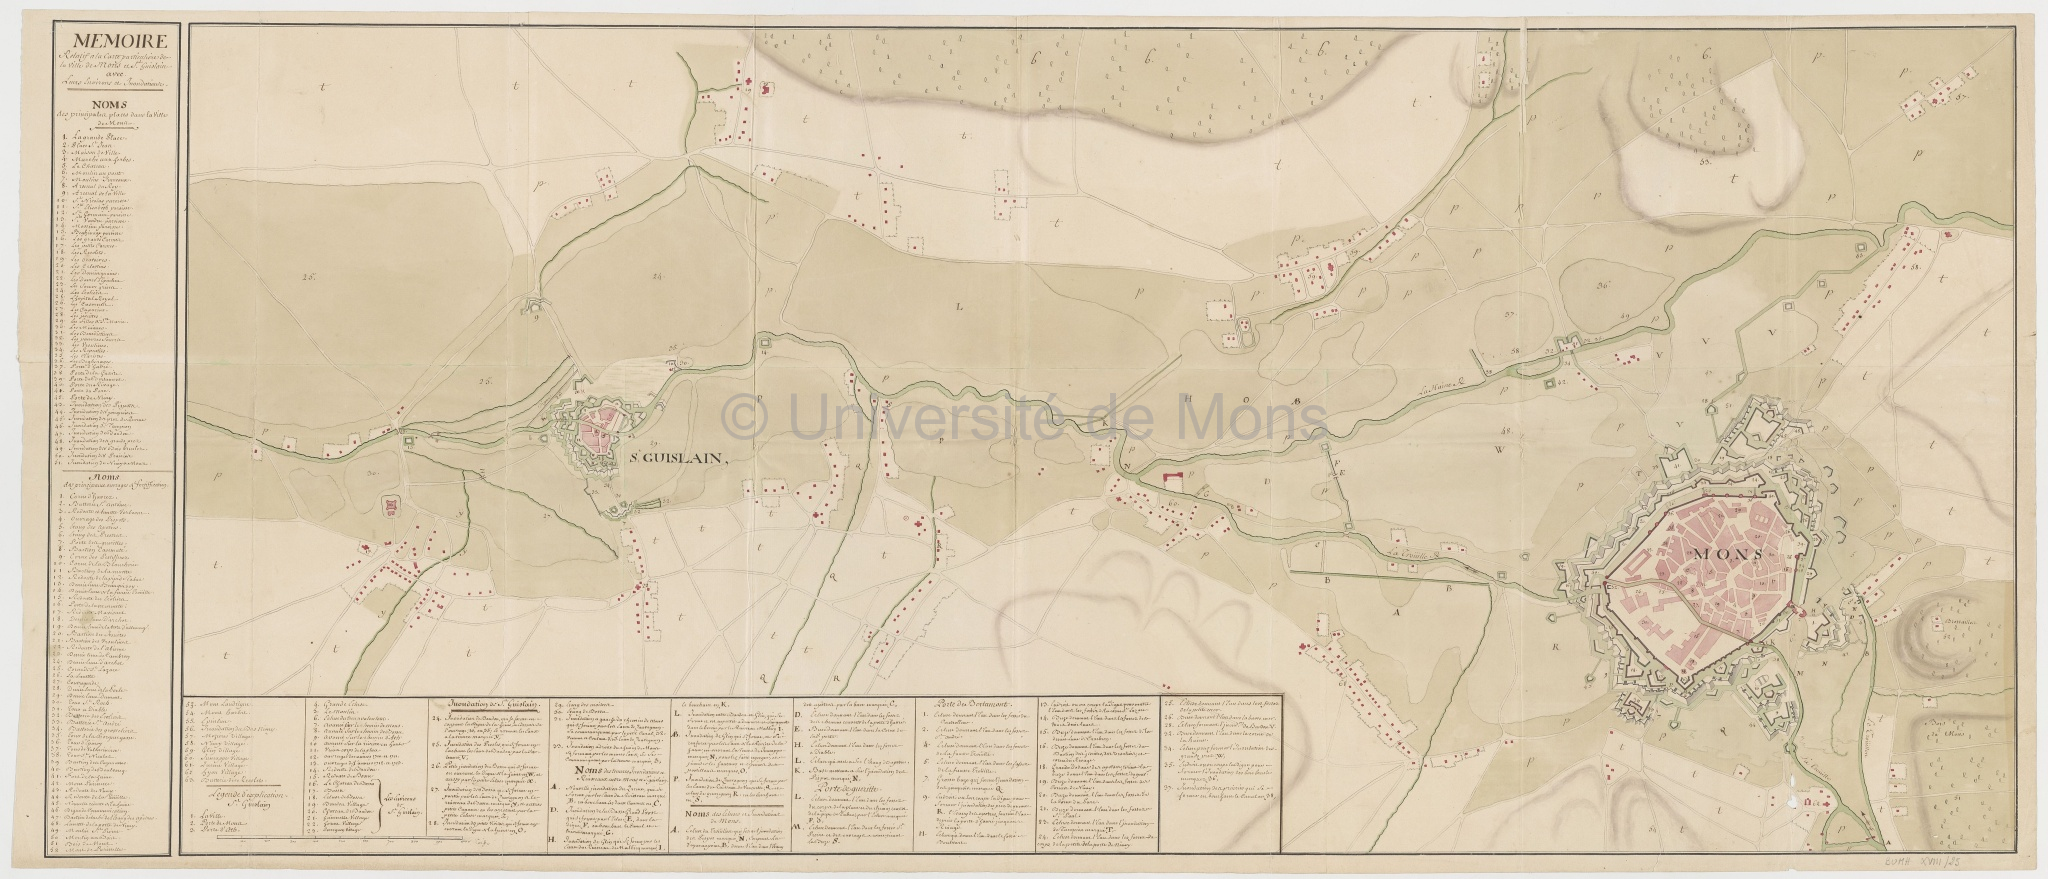 Mémoire relatif à la carte particulière de la ville de Mons et St Guislain avec leurs environs et inondations